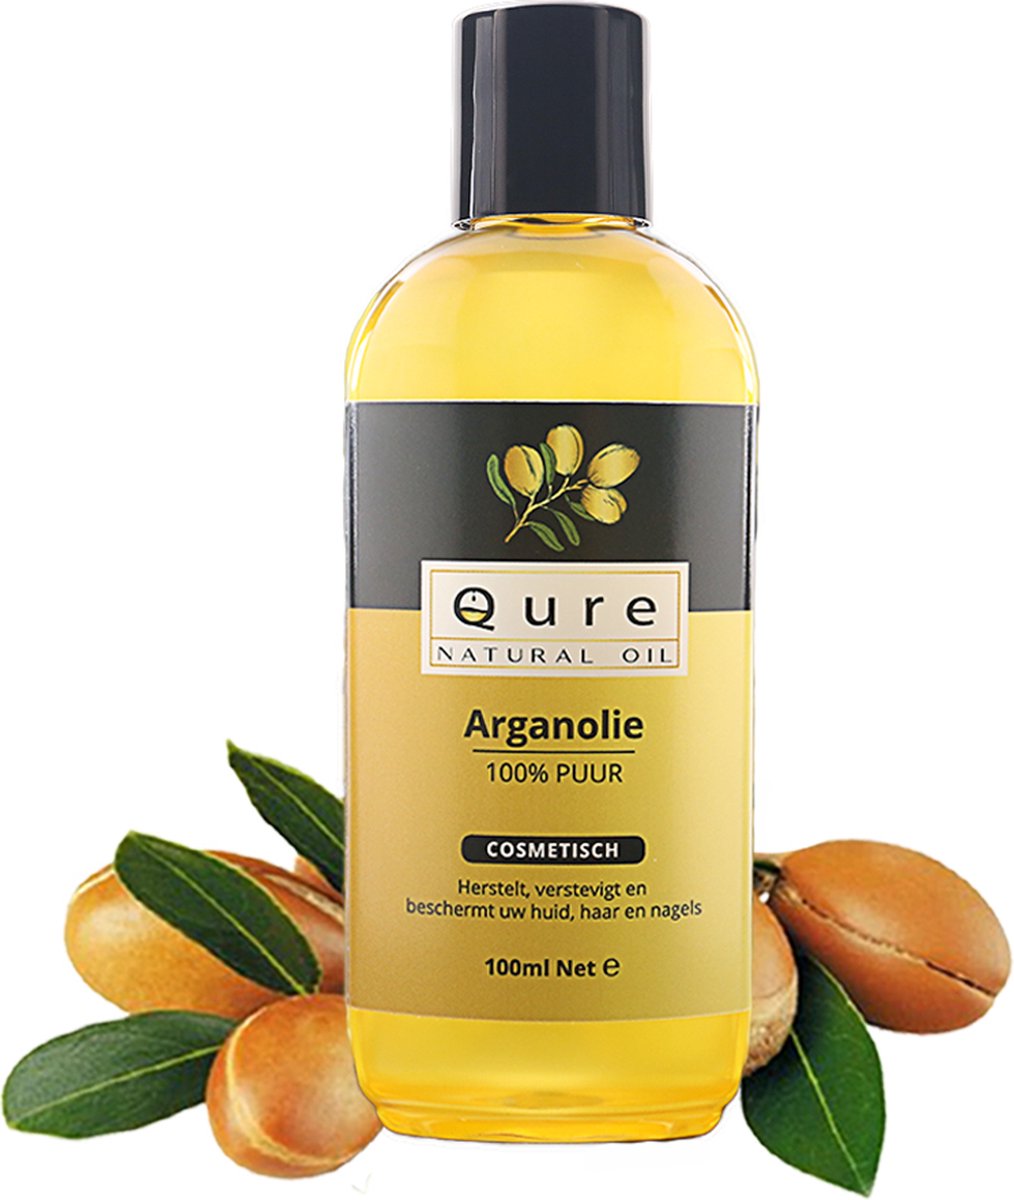 Arganolie 100ml | Biologisch | 100% Puur & Onbewerkt | Argan Olie voor Gezicht, Haar en Lichaam | Huidolie | Haarolie | Moroccan Argan Oil